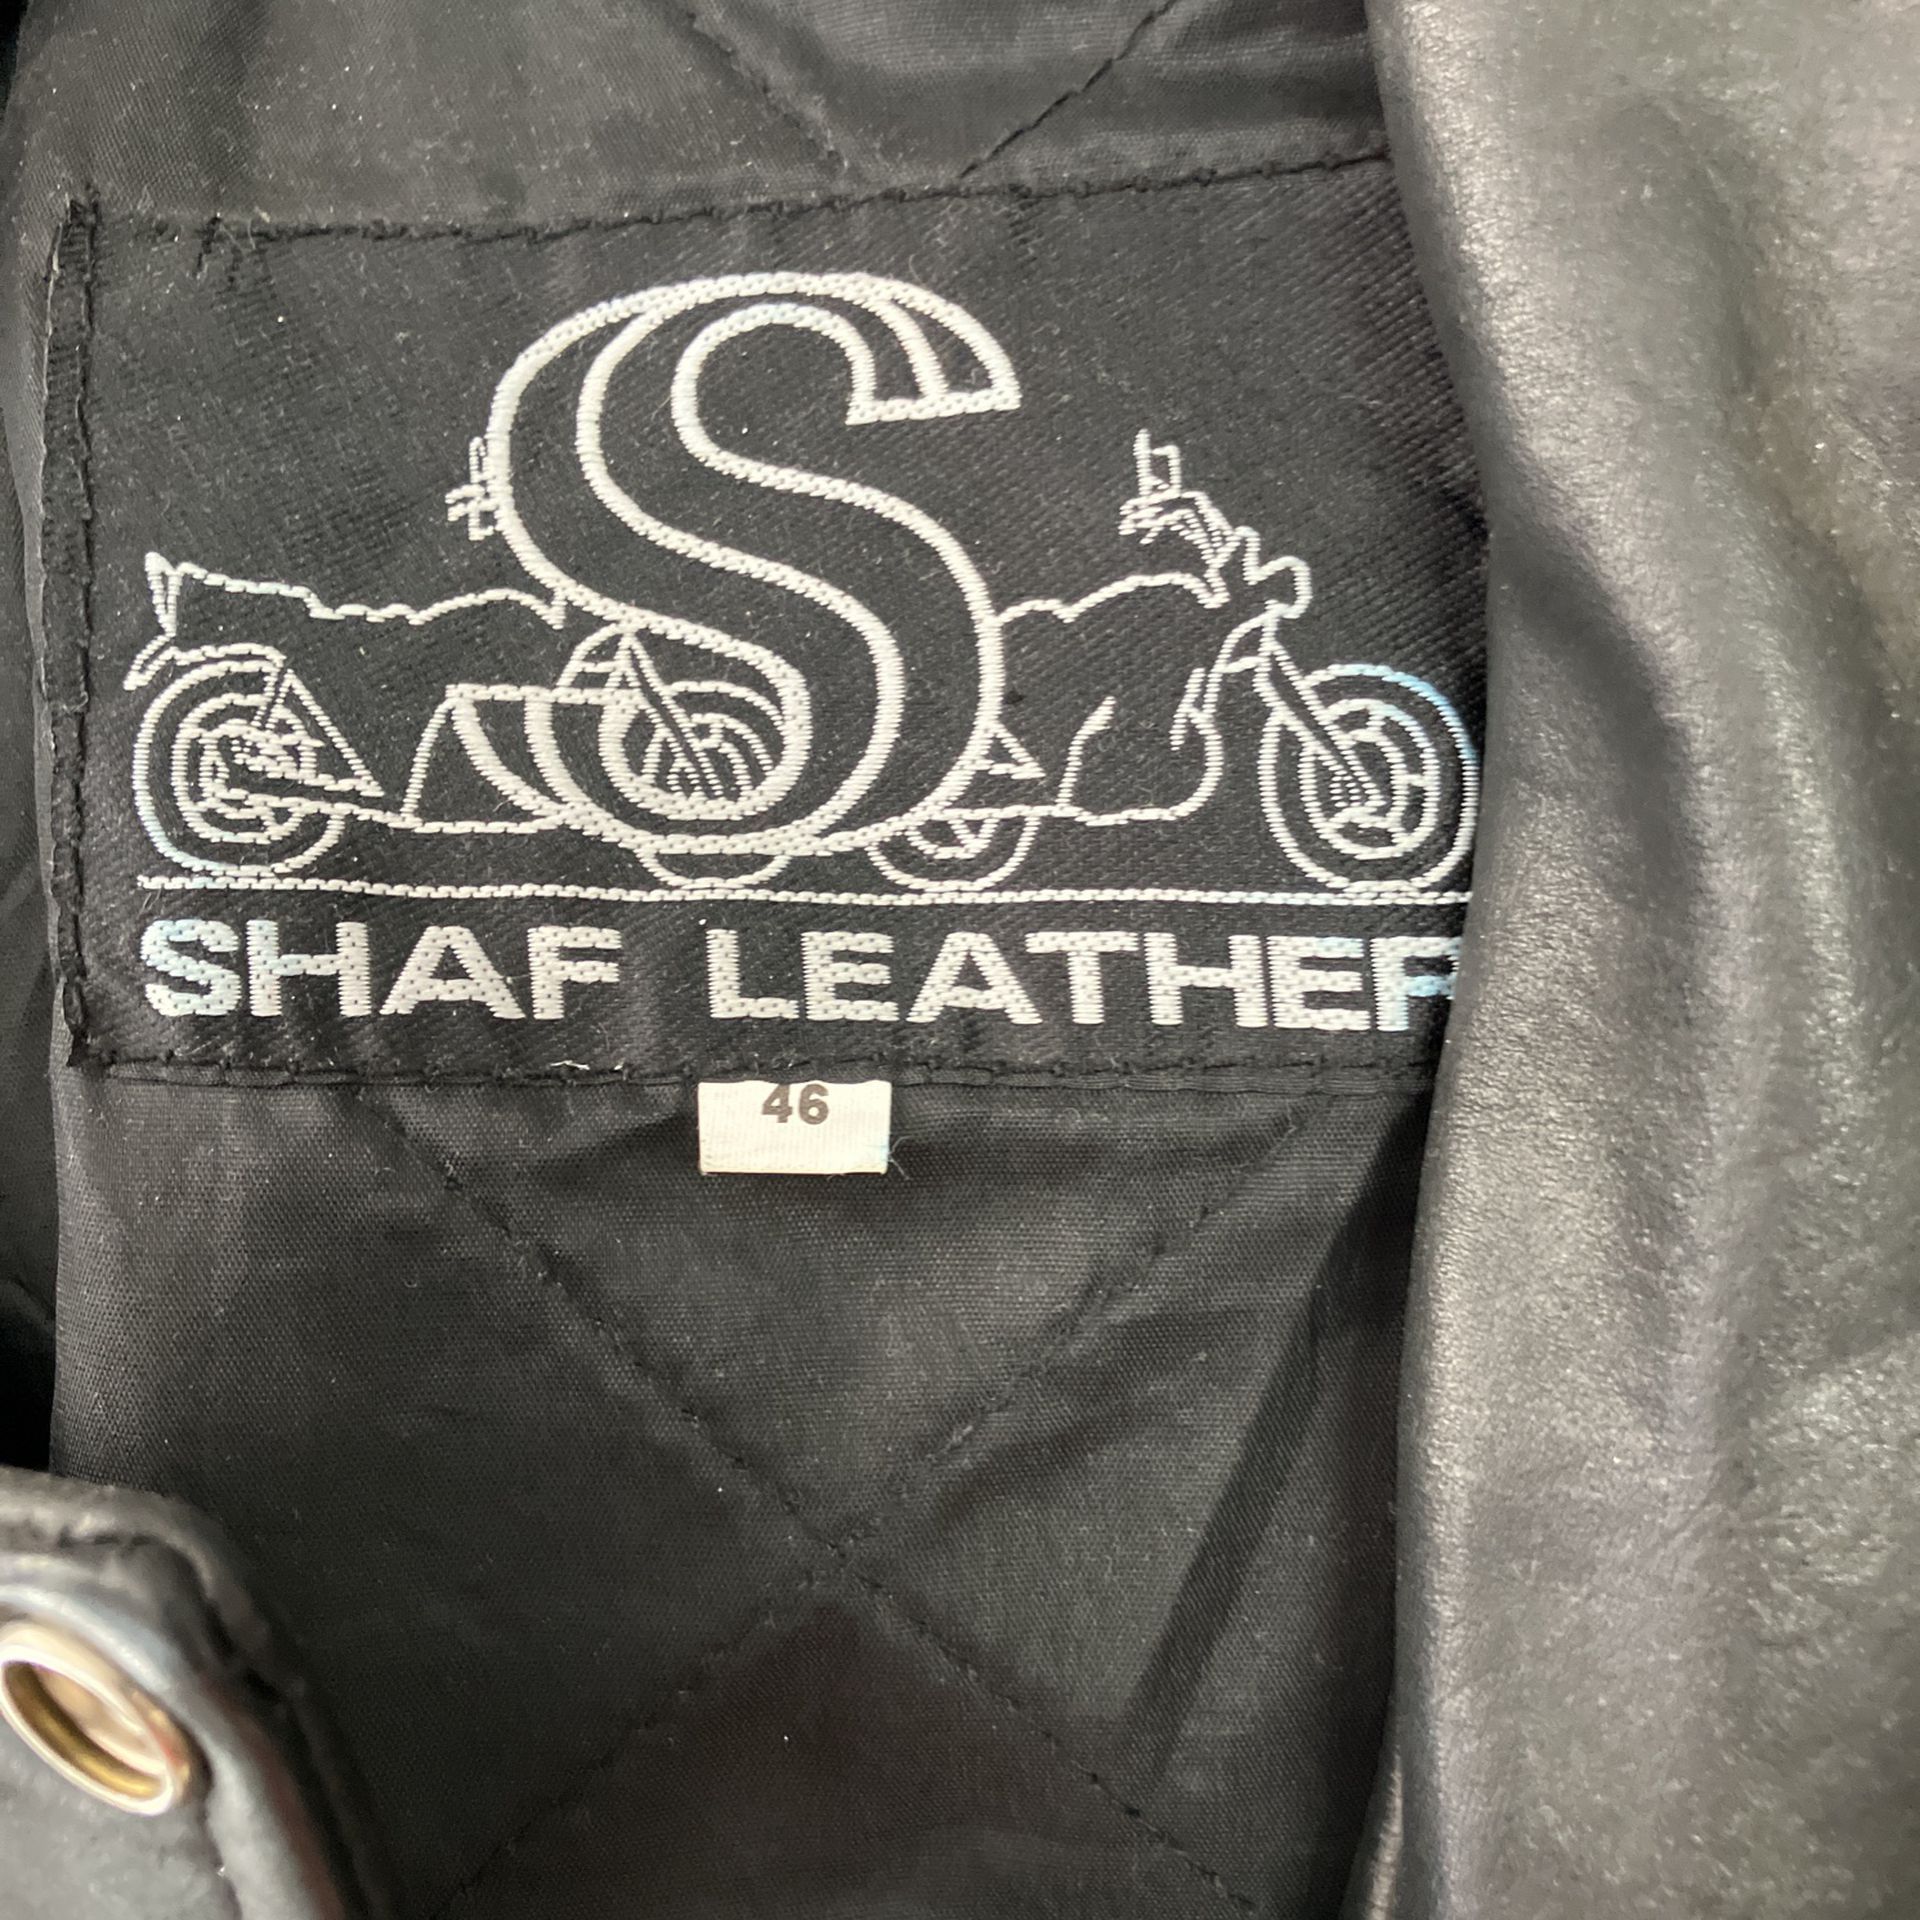 As 46 Shag Leather Jacket 